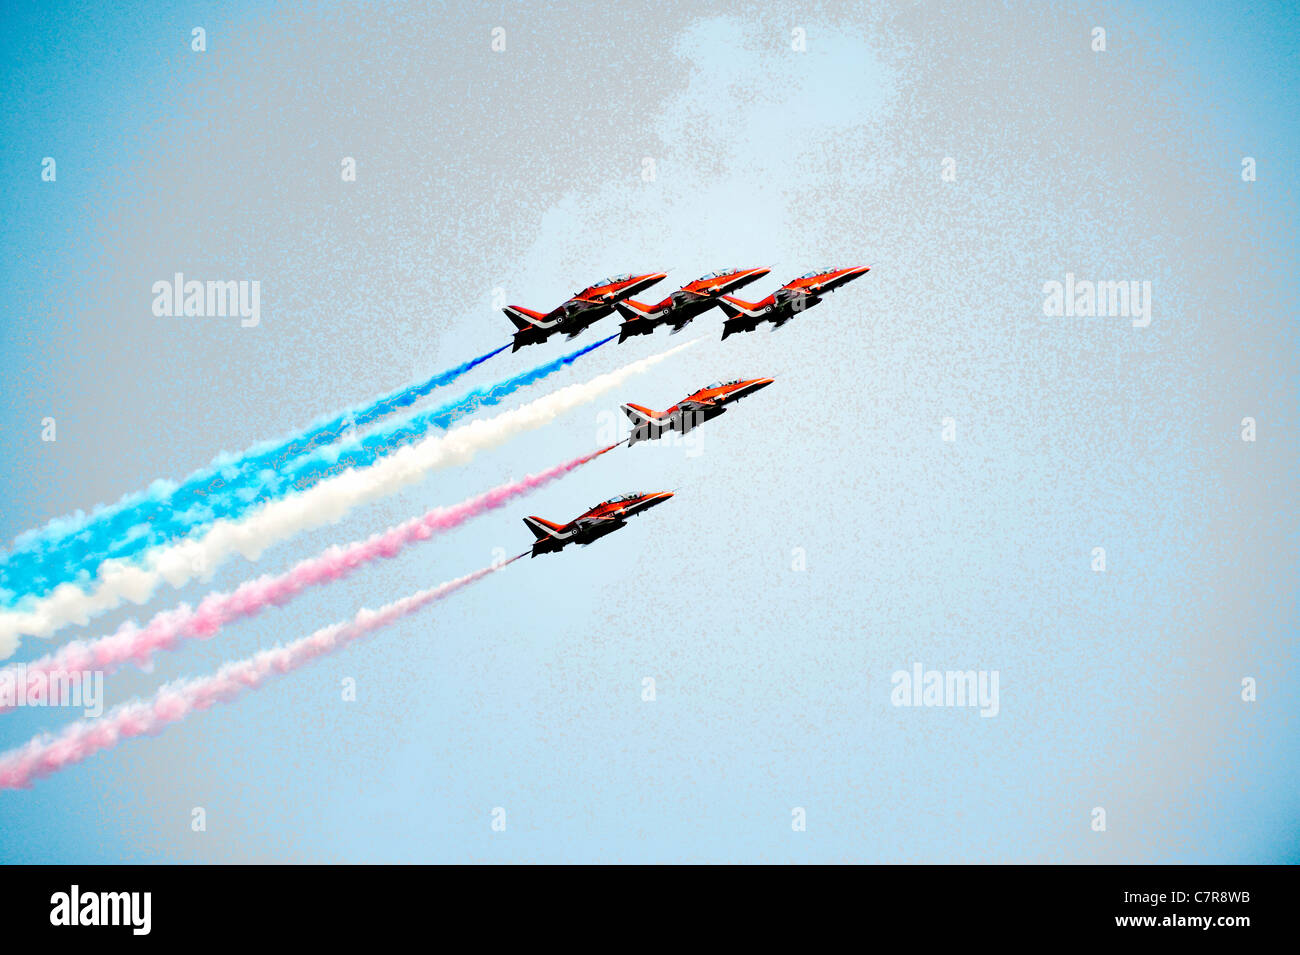 Rote Pfeile Kunstflugstaffel der Royal Air Force. Bildung von fünf roten BAE Hawk T1As Schulflugzeug Klettern gegen blauen Himmel Grafik Stockfoto